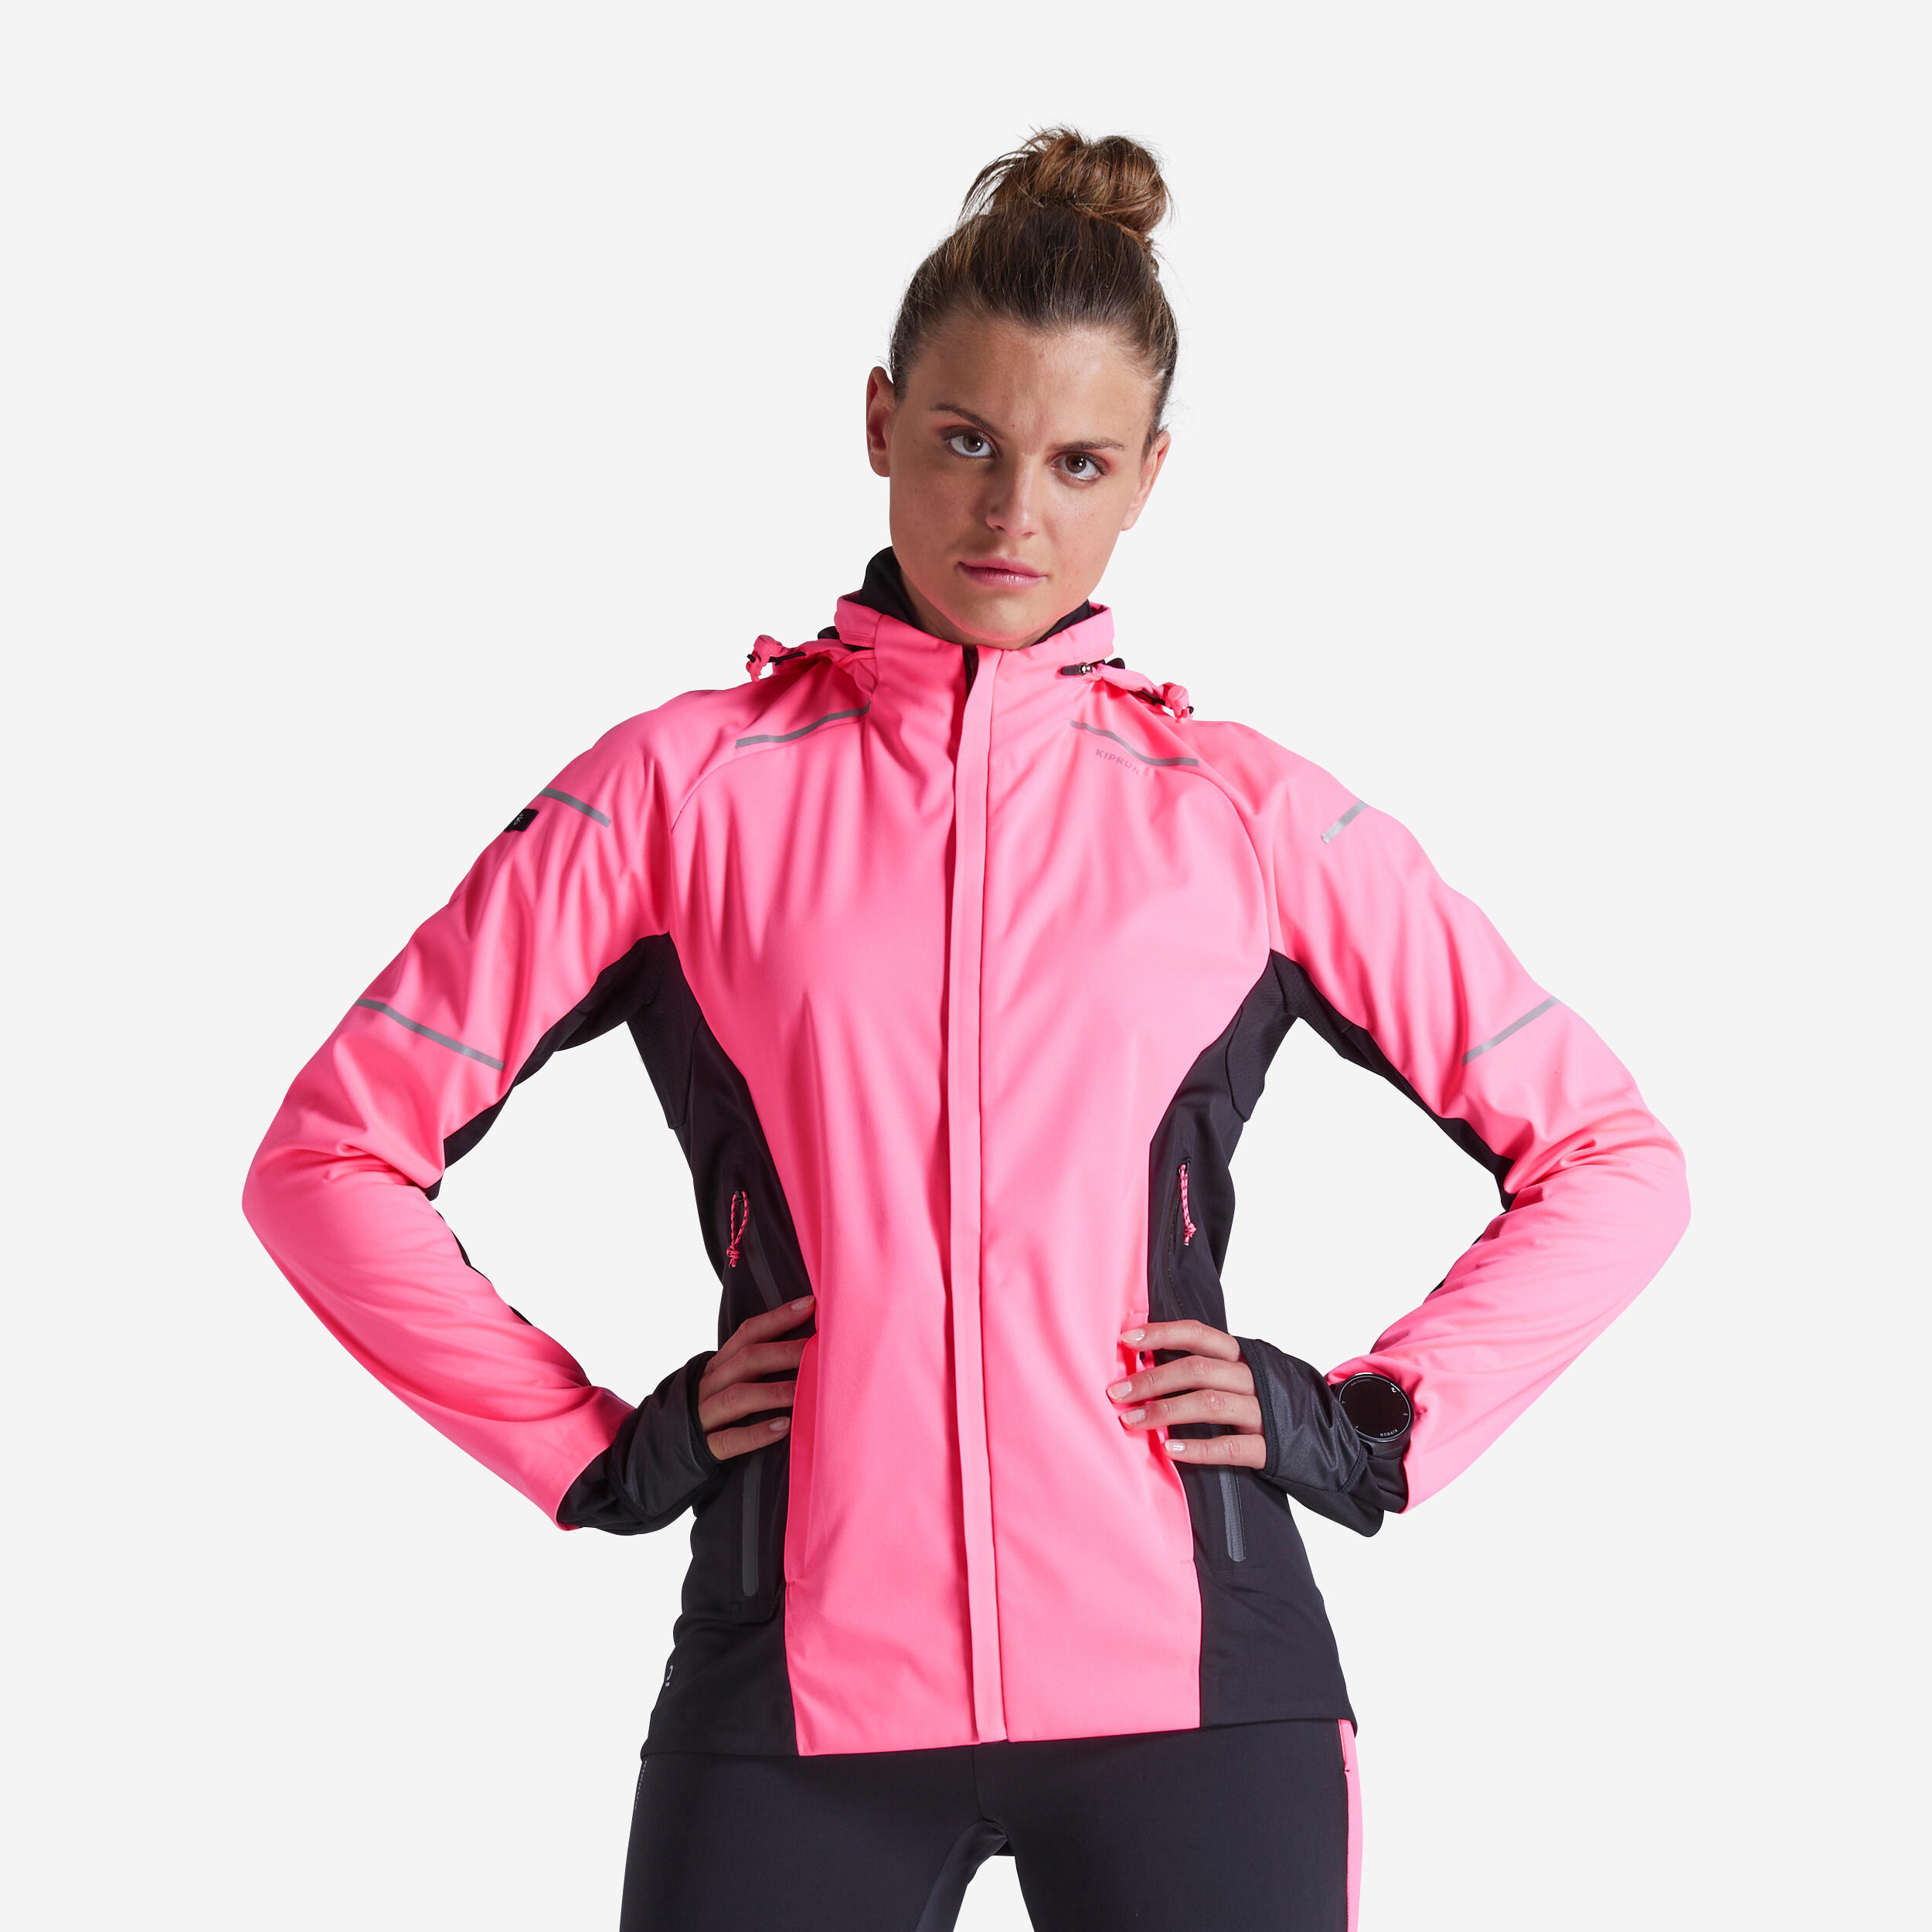 Decathlon | Giacca running donna KIPRUN WARM REGUL rosa fluo |  Kiprun